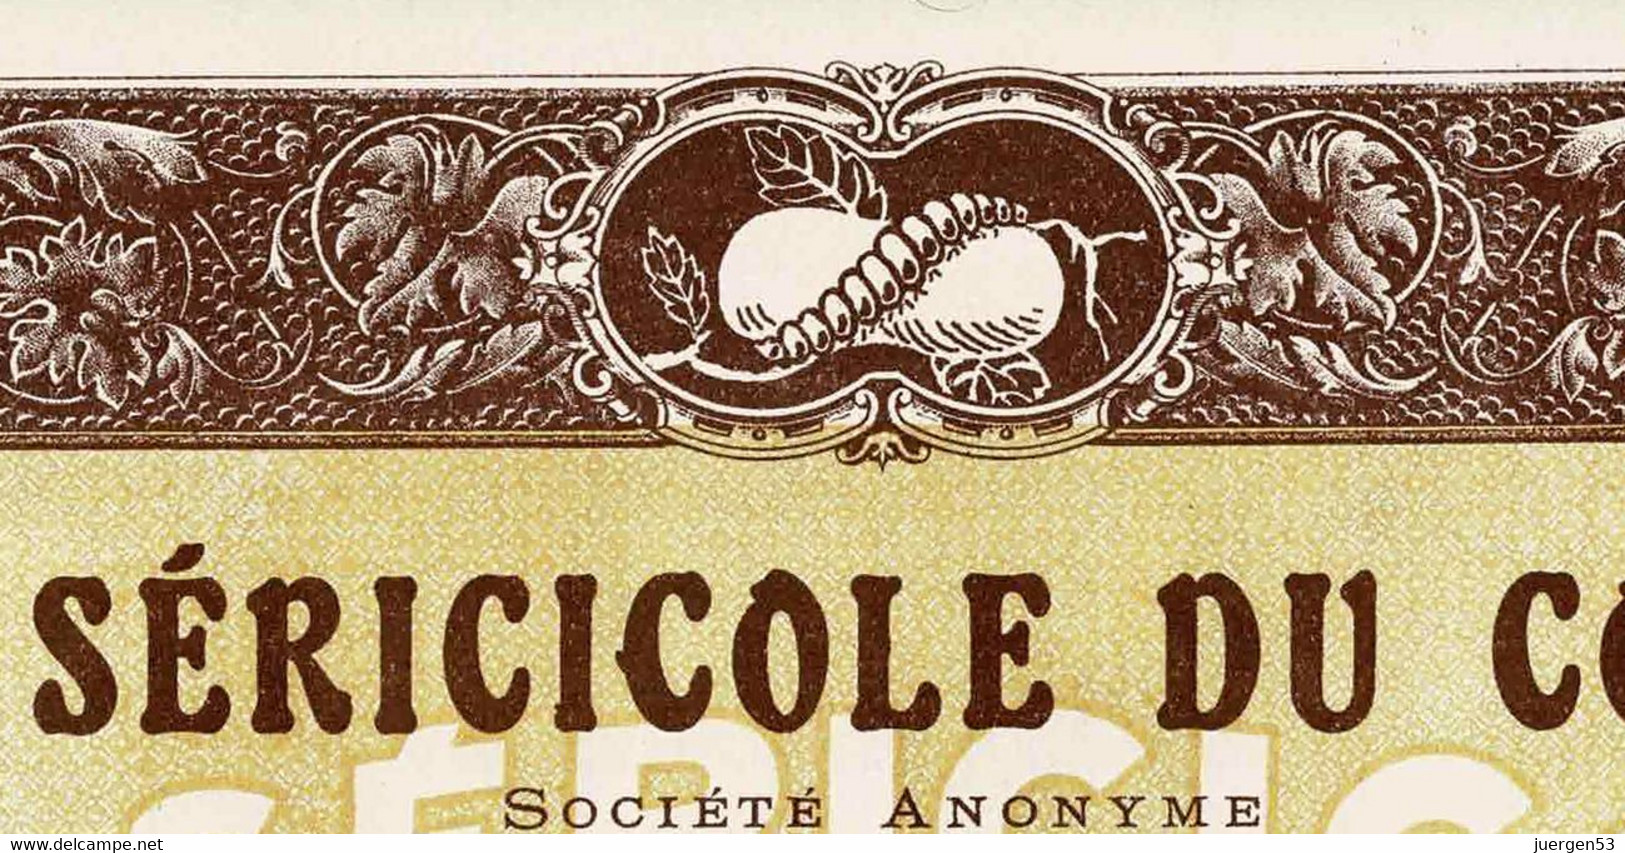 Lot: 5 X La Sericicole Du Congo, 1927 - Textile